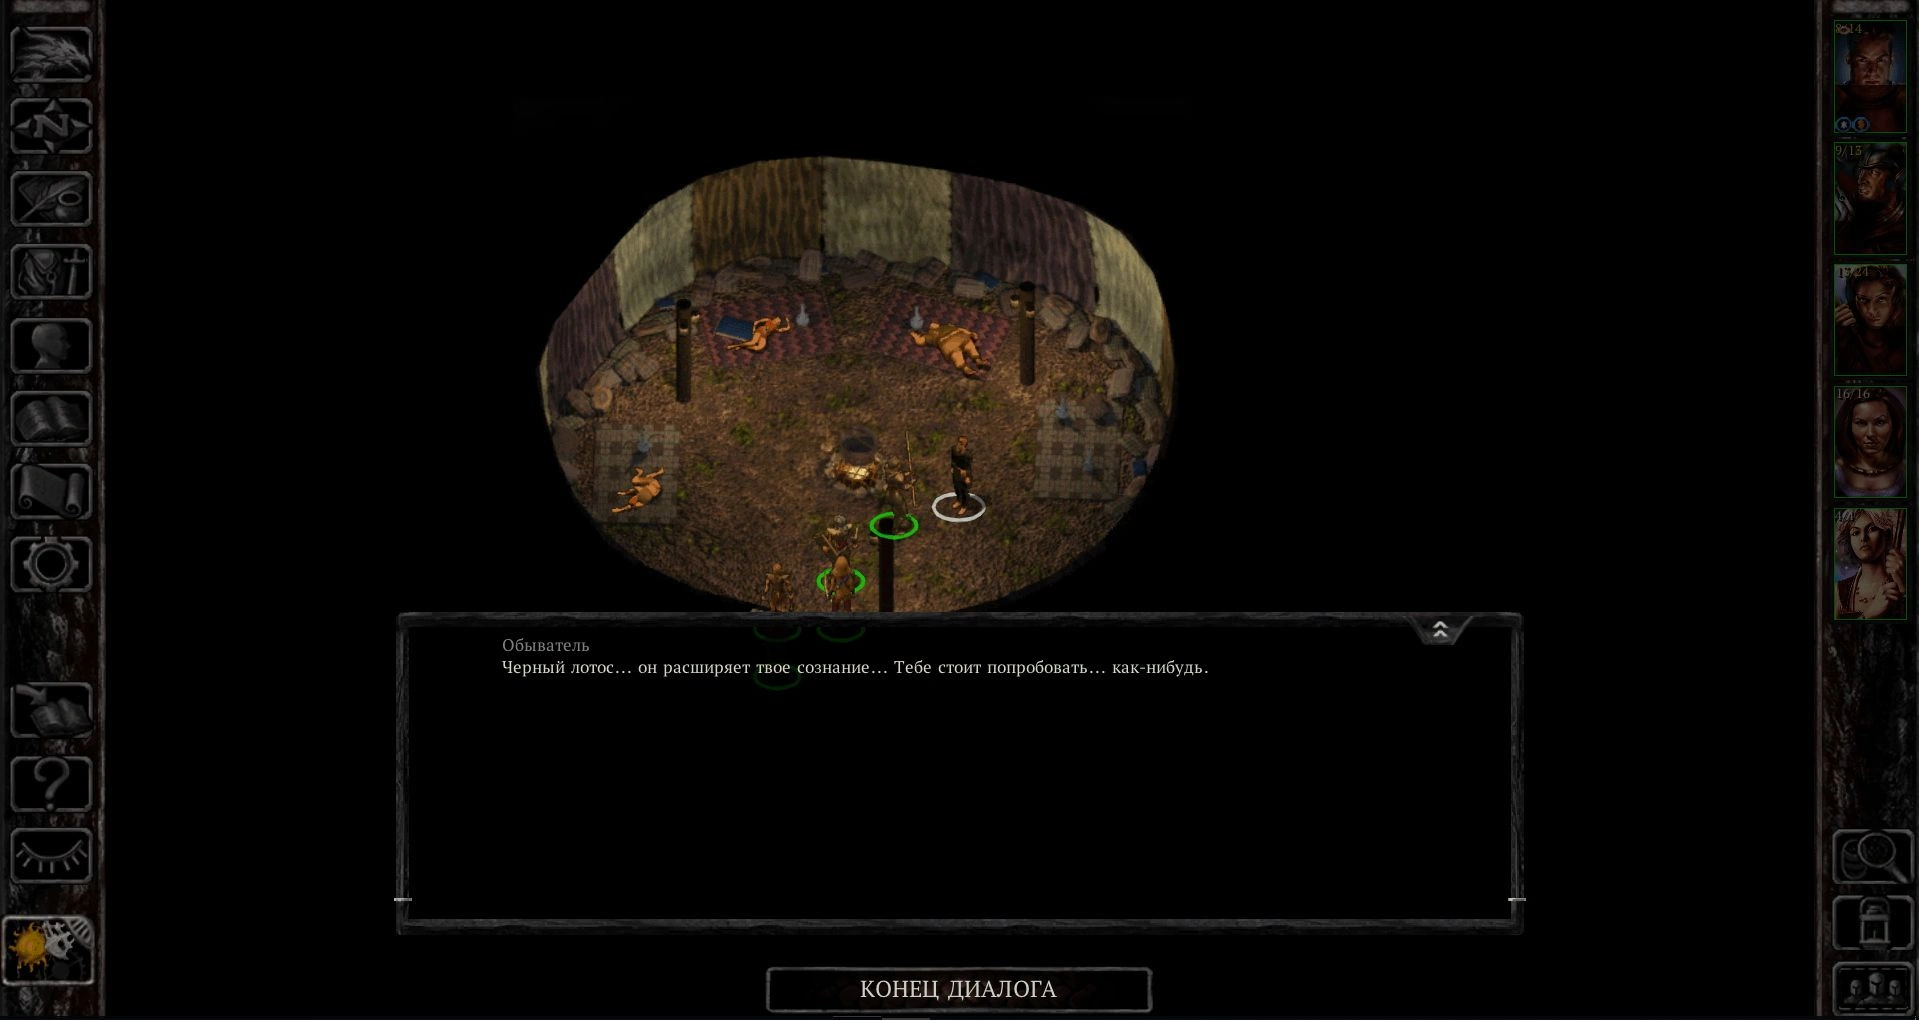 [Baldur’s Gate] На скриншоте: Чёрный лотос расширяет сознание.